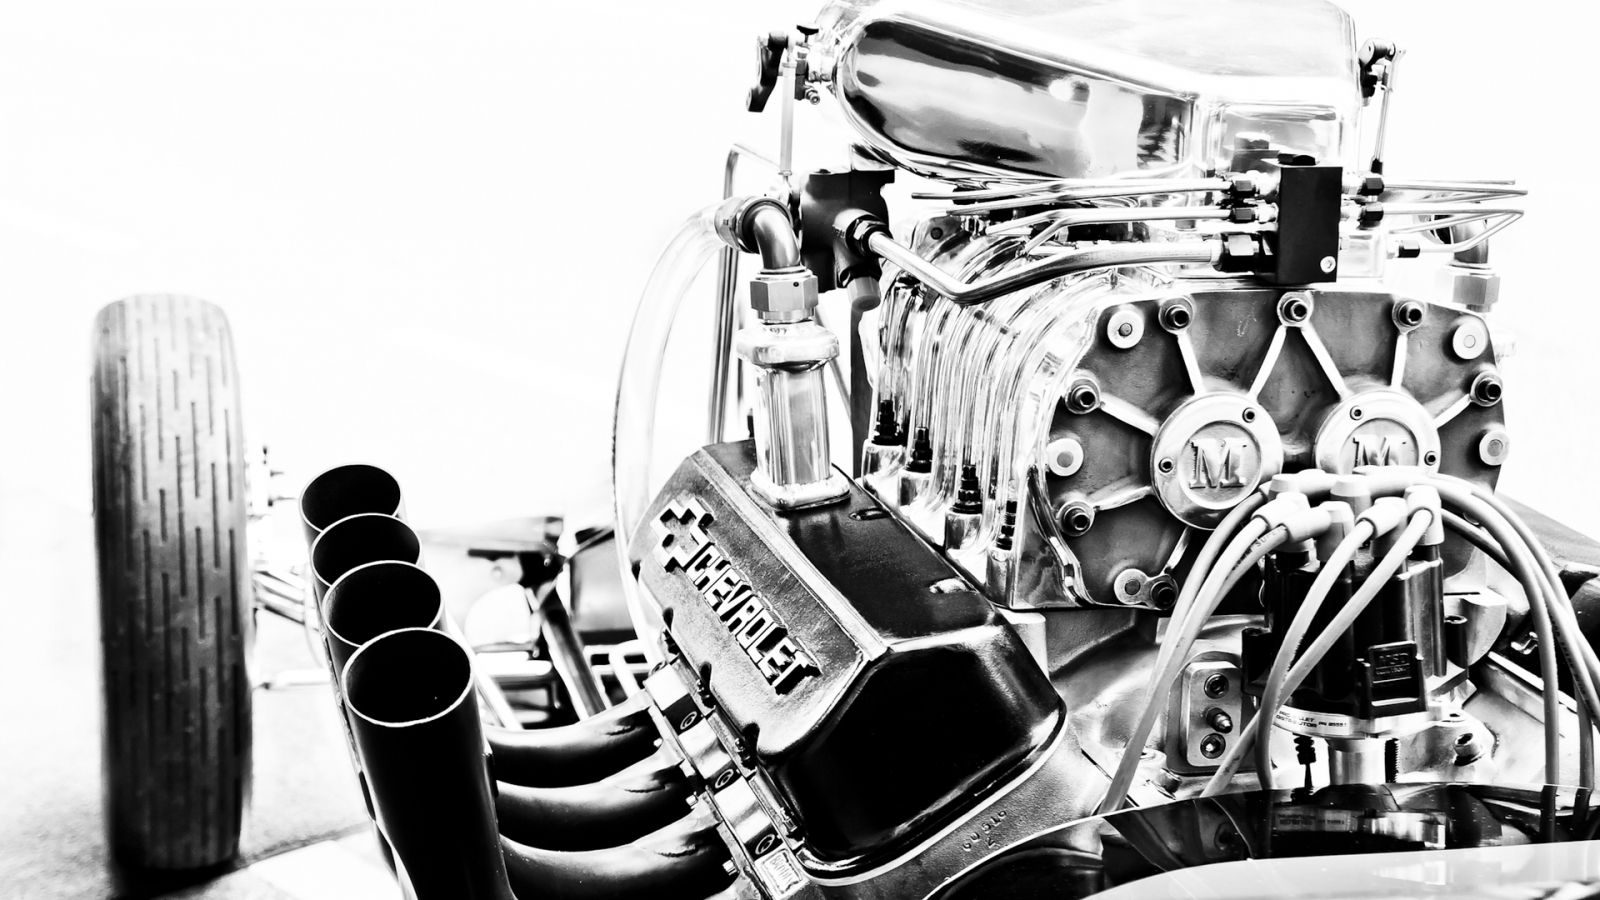 Chevrolet Corvette Engine for 1600 x 900 HDTV resolution